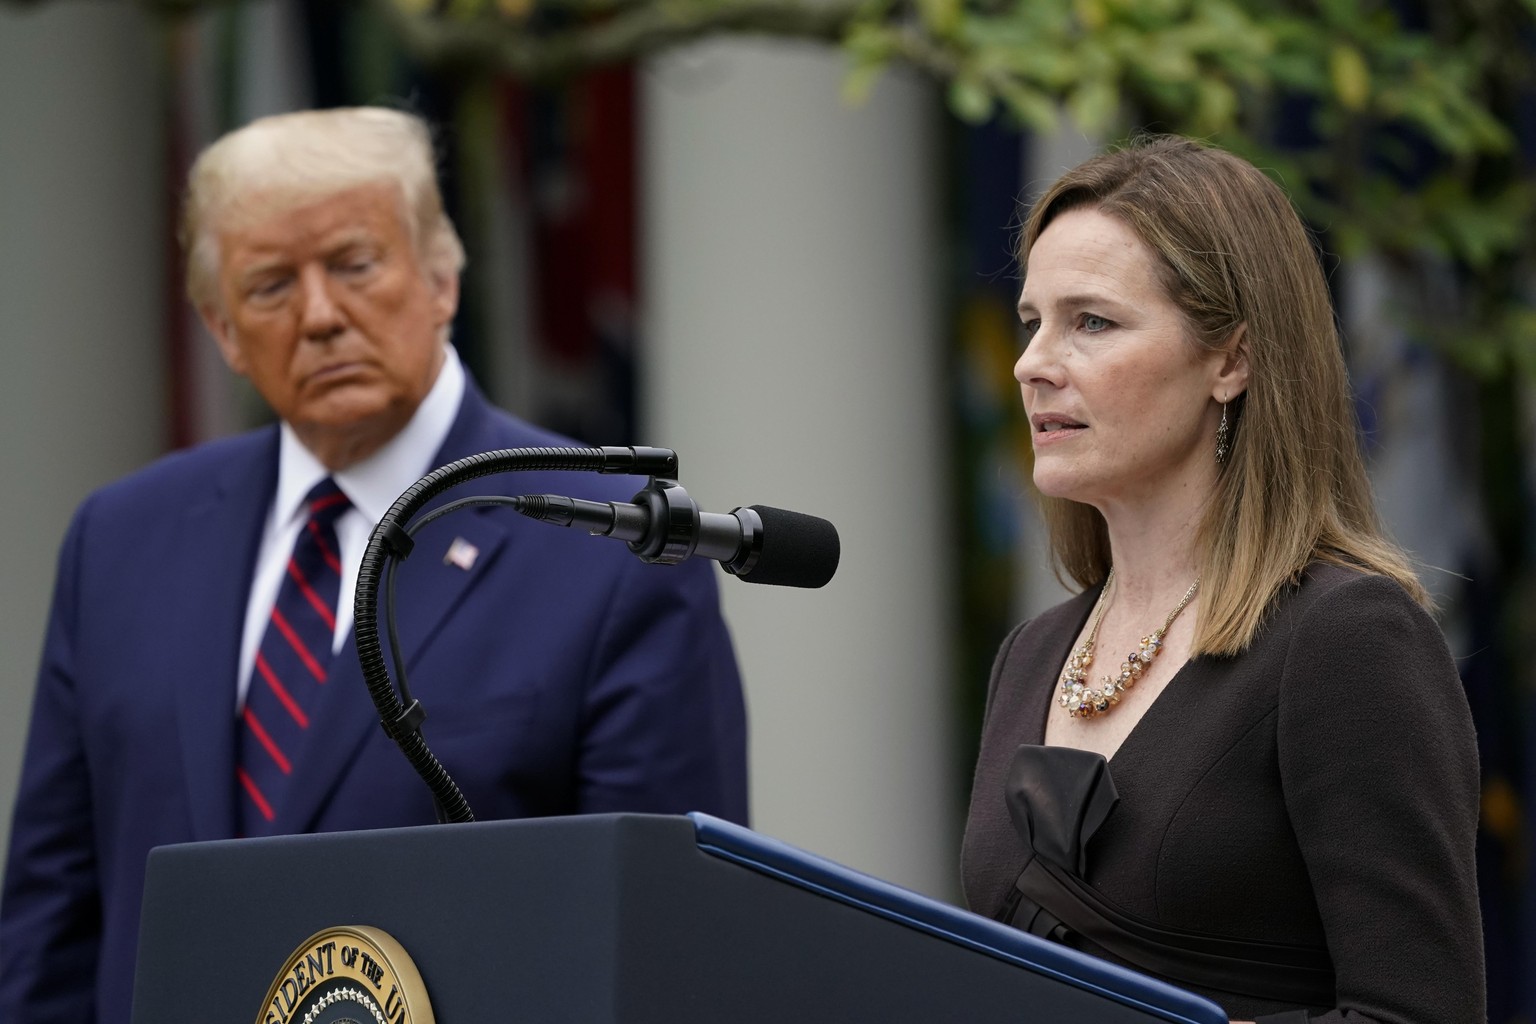 Richterin Amy Coney Barrett und Donald Trump, Präsident der USA, sprechen auf einer Pressekonferenz im Rosengarten des Weißen Hauses.